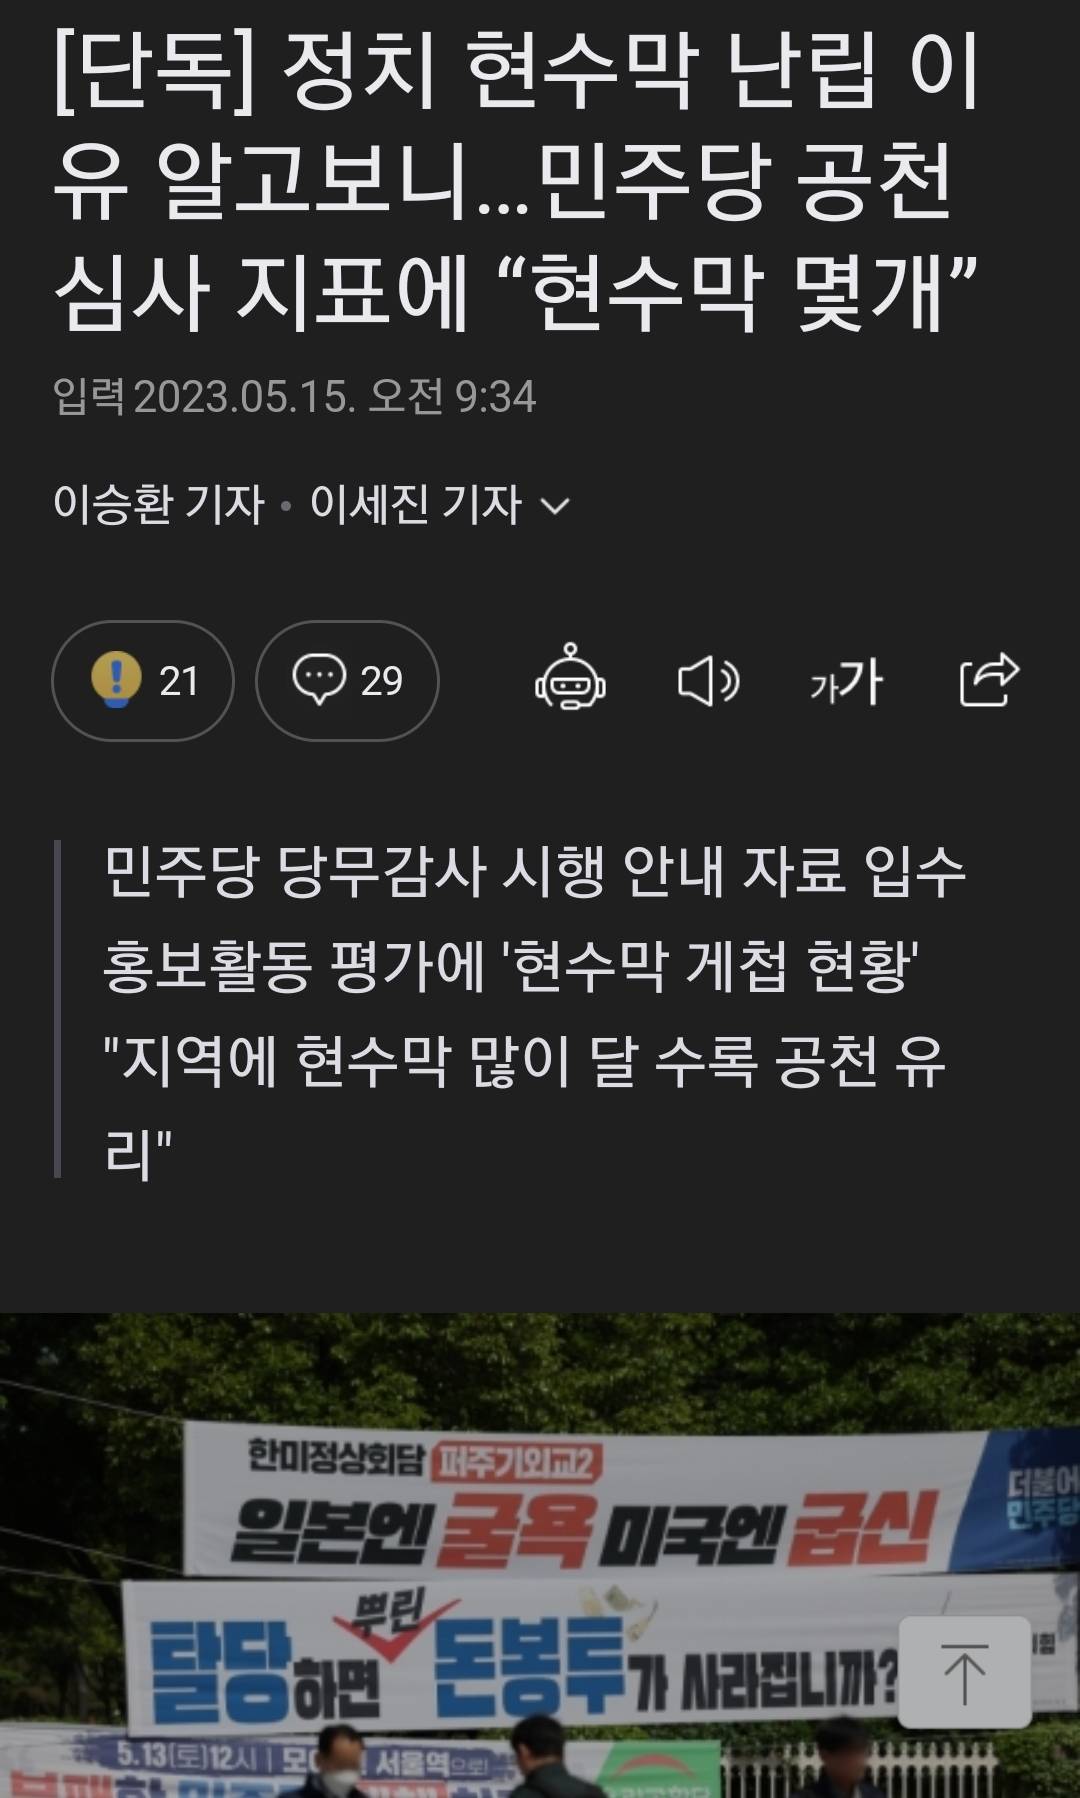 현수막 많이 달 수록 공천 유리